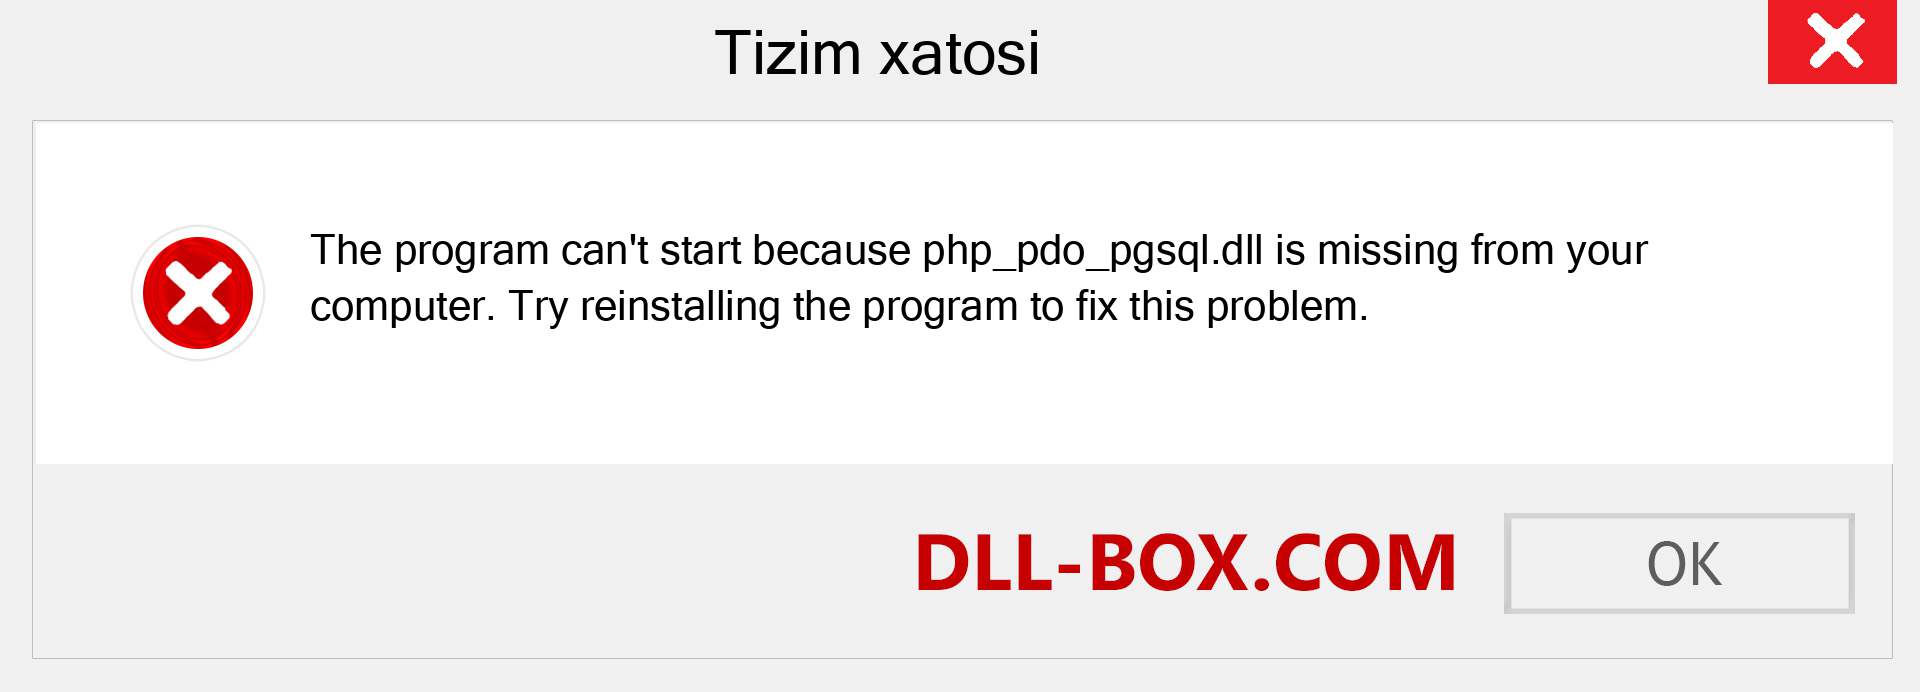 php_pdo_pgsql.dll fayli yo'qolganmi?. Windows 7, 8, 10 uchun yuklab olish - Windowsda php_pdo_pgsql dll etishmayotgan xatoni tuzating, rasmlar, rasmlar